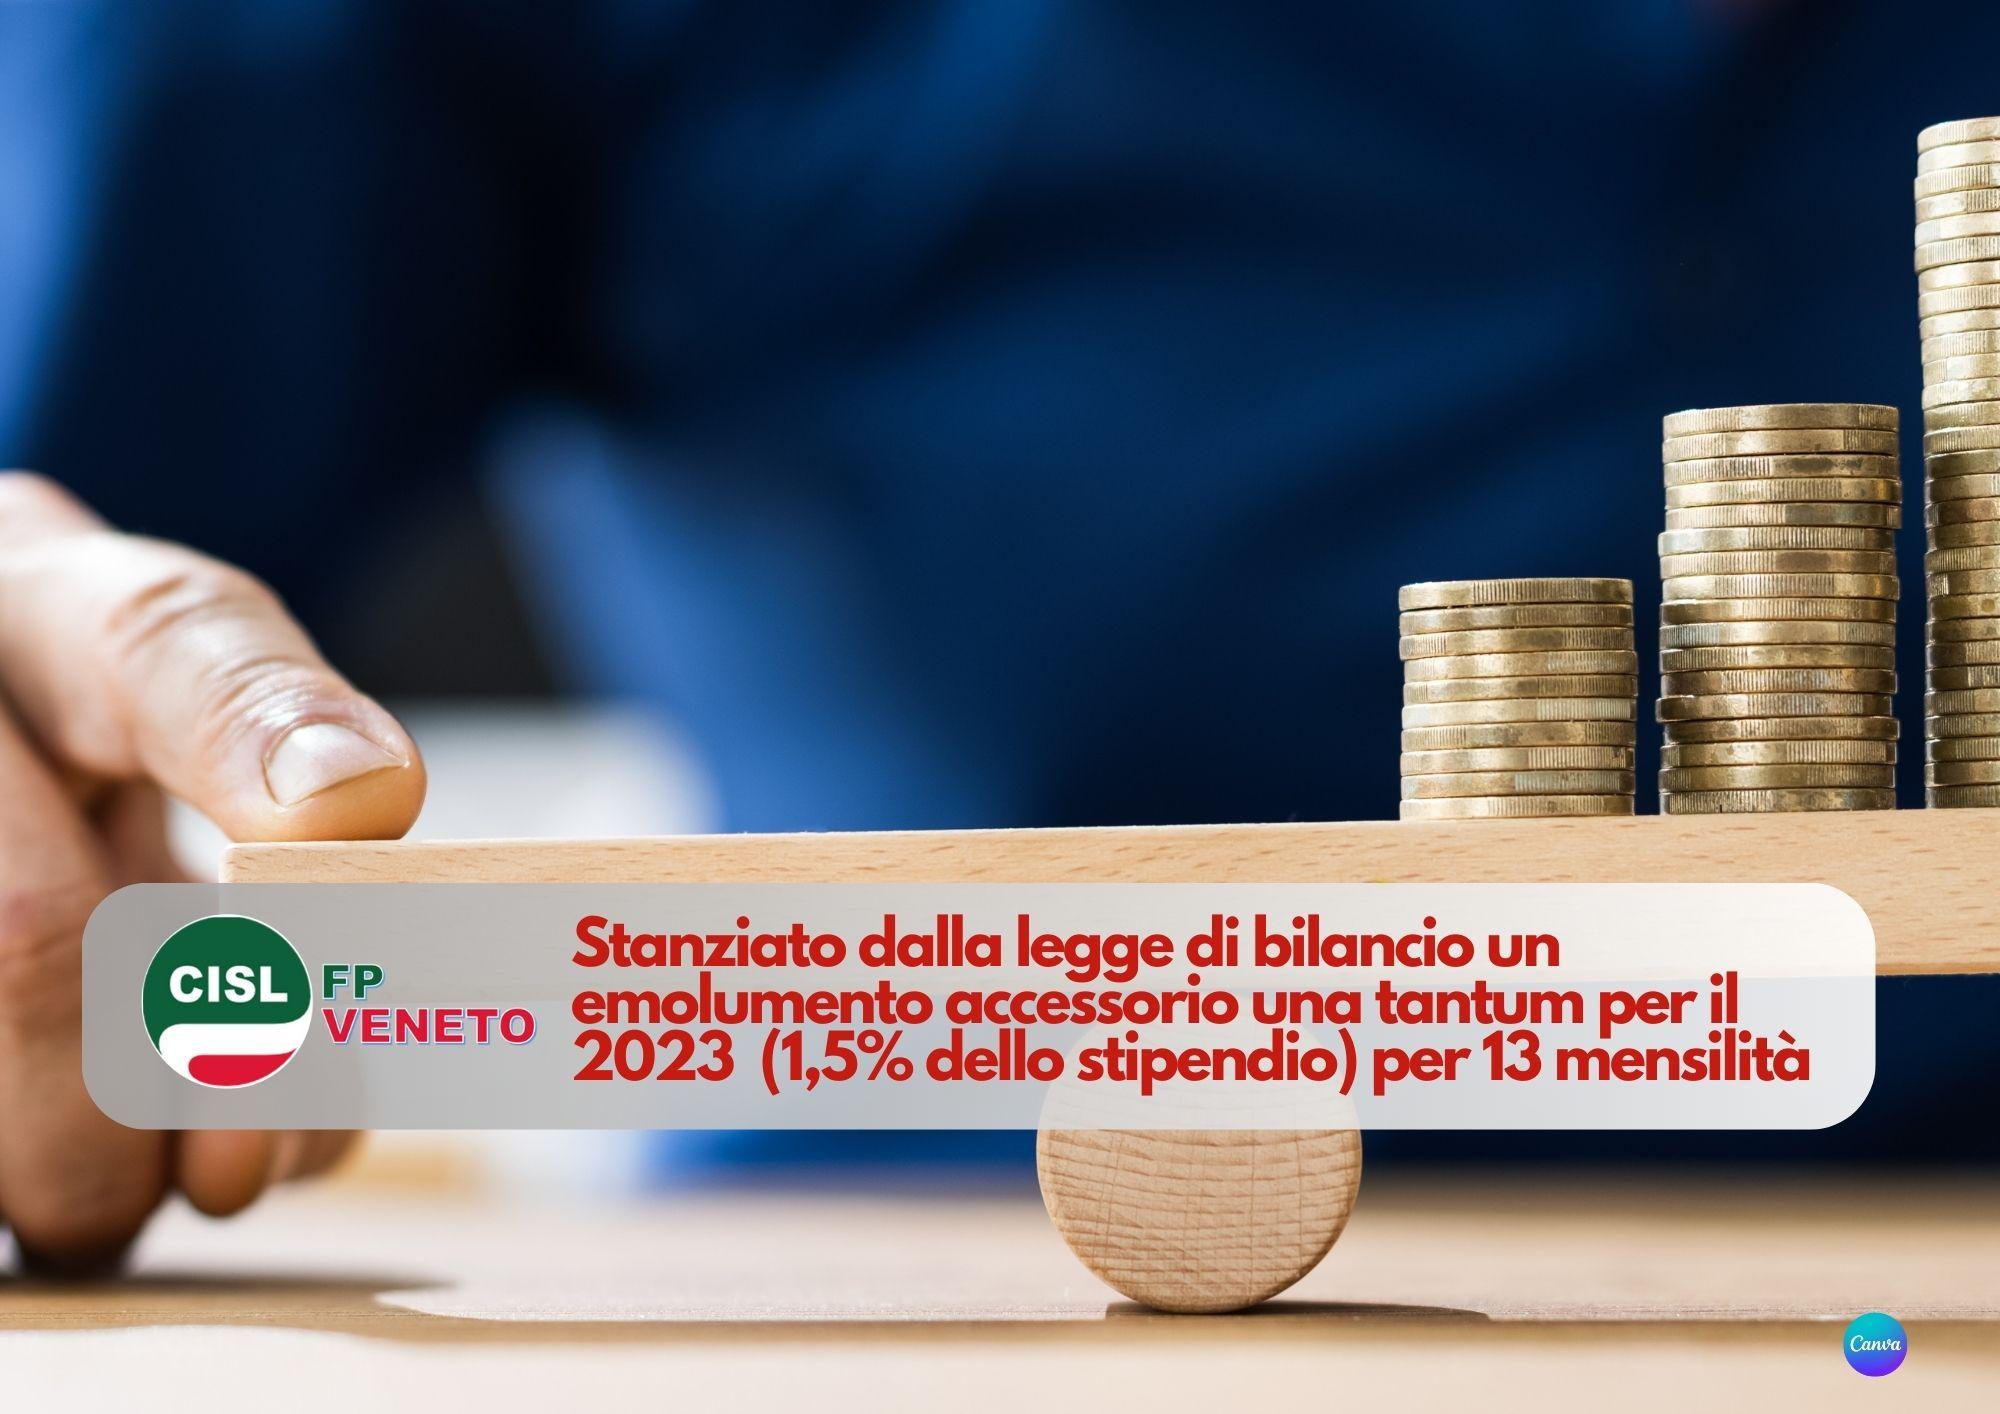 CISL FP Veneto. Pubblico impiego. Emolumento accessorio una tantum 2023 1,5% dello stipendio per 13 mensilità